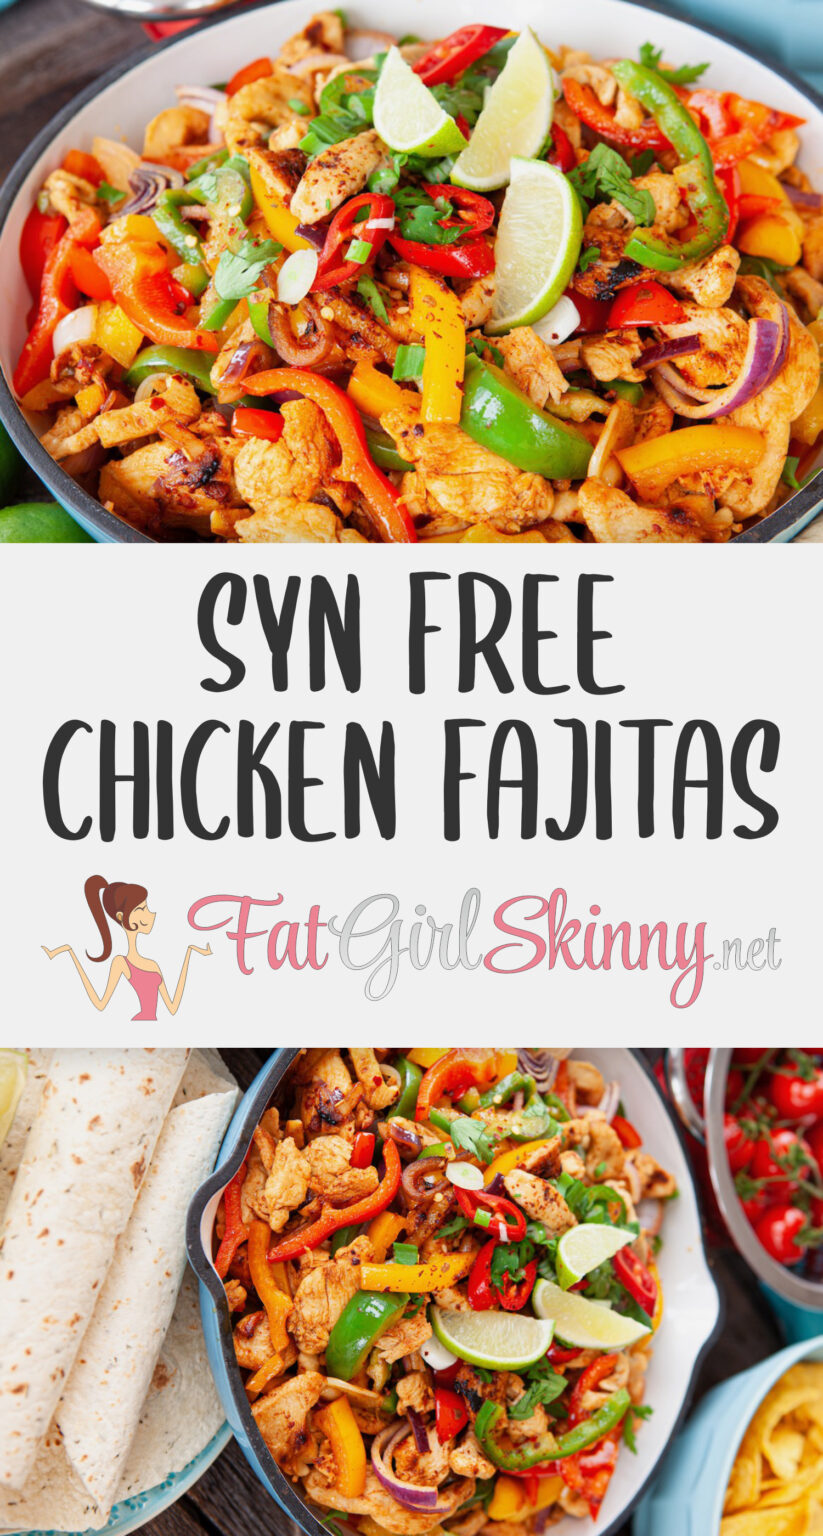 Syn Free Mexican Chicken Fajitas | Fatgirlskinny.net | Slimming World ...